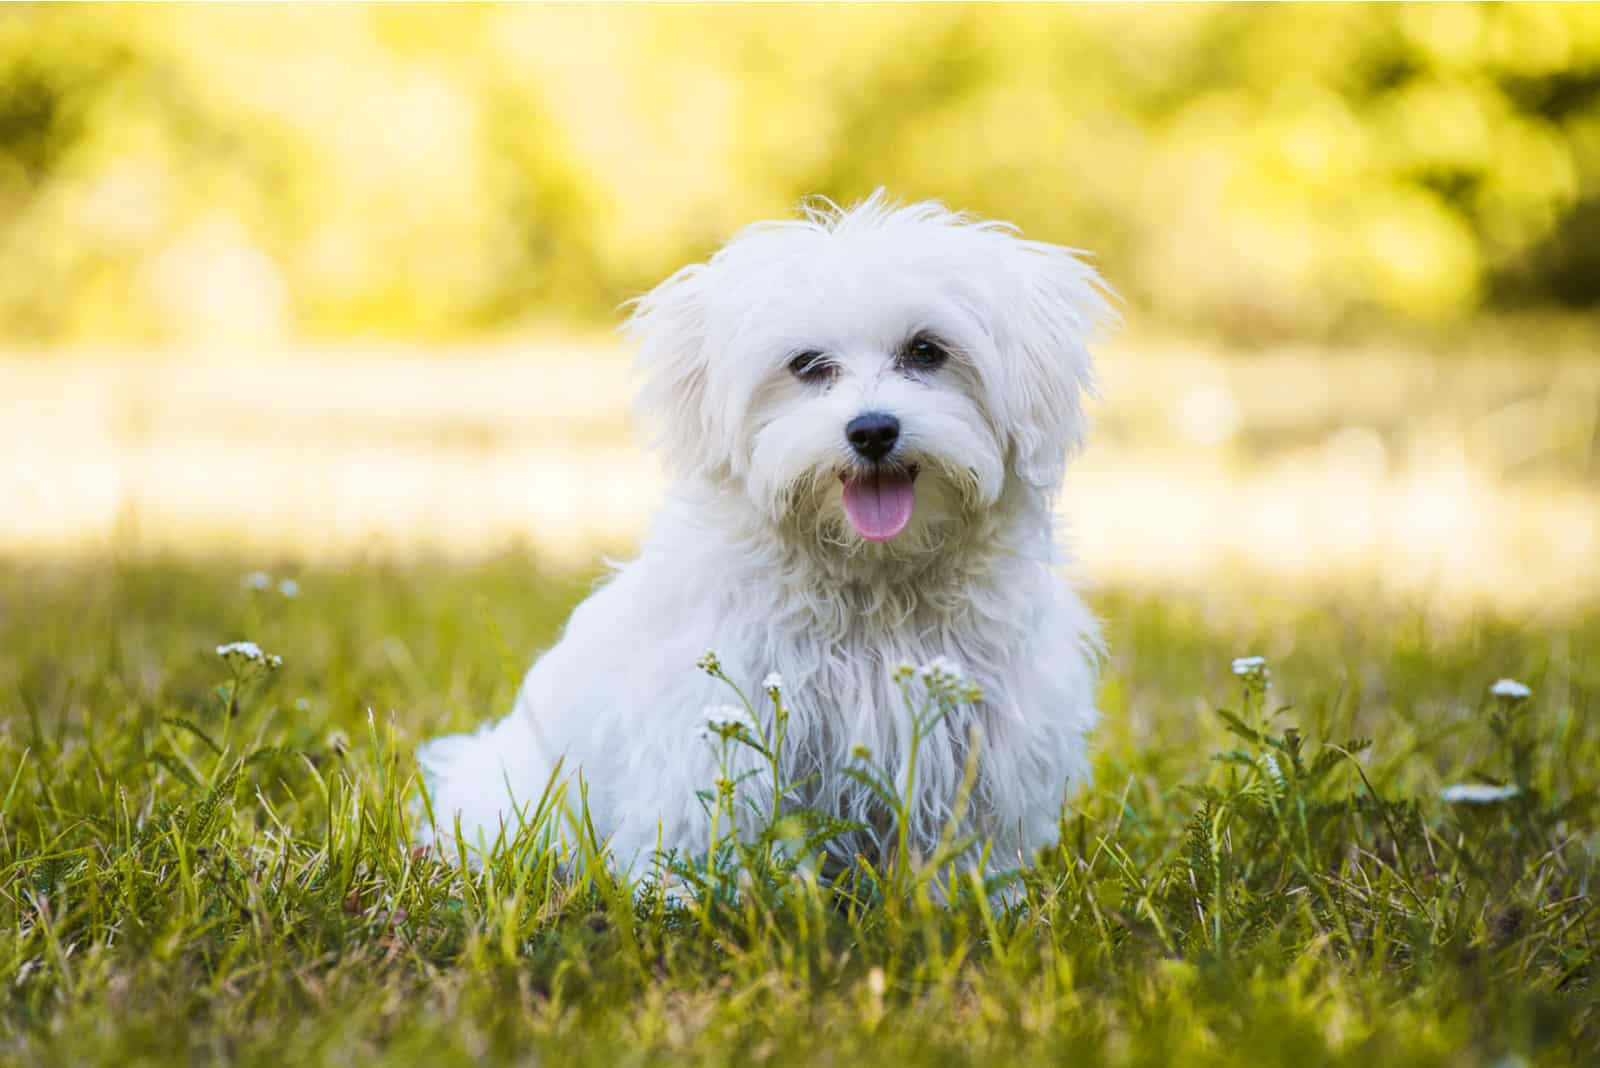 Maltese puppy in grass